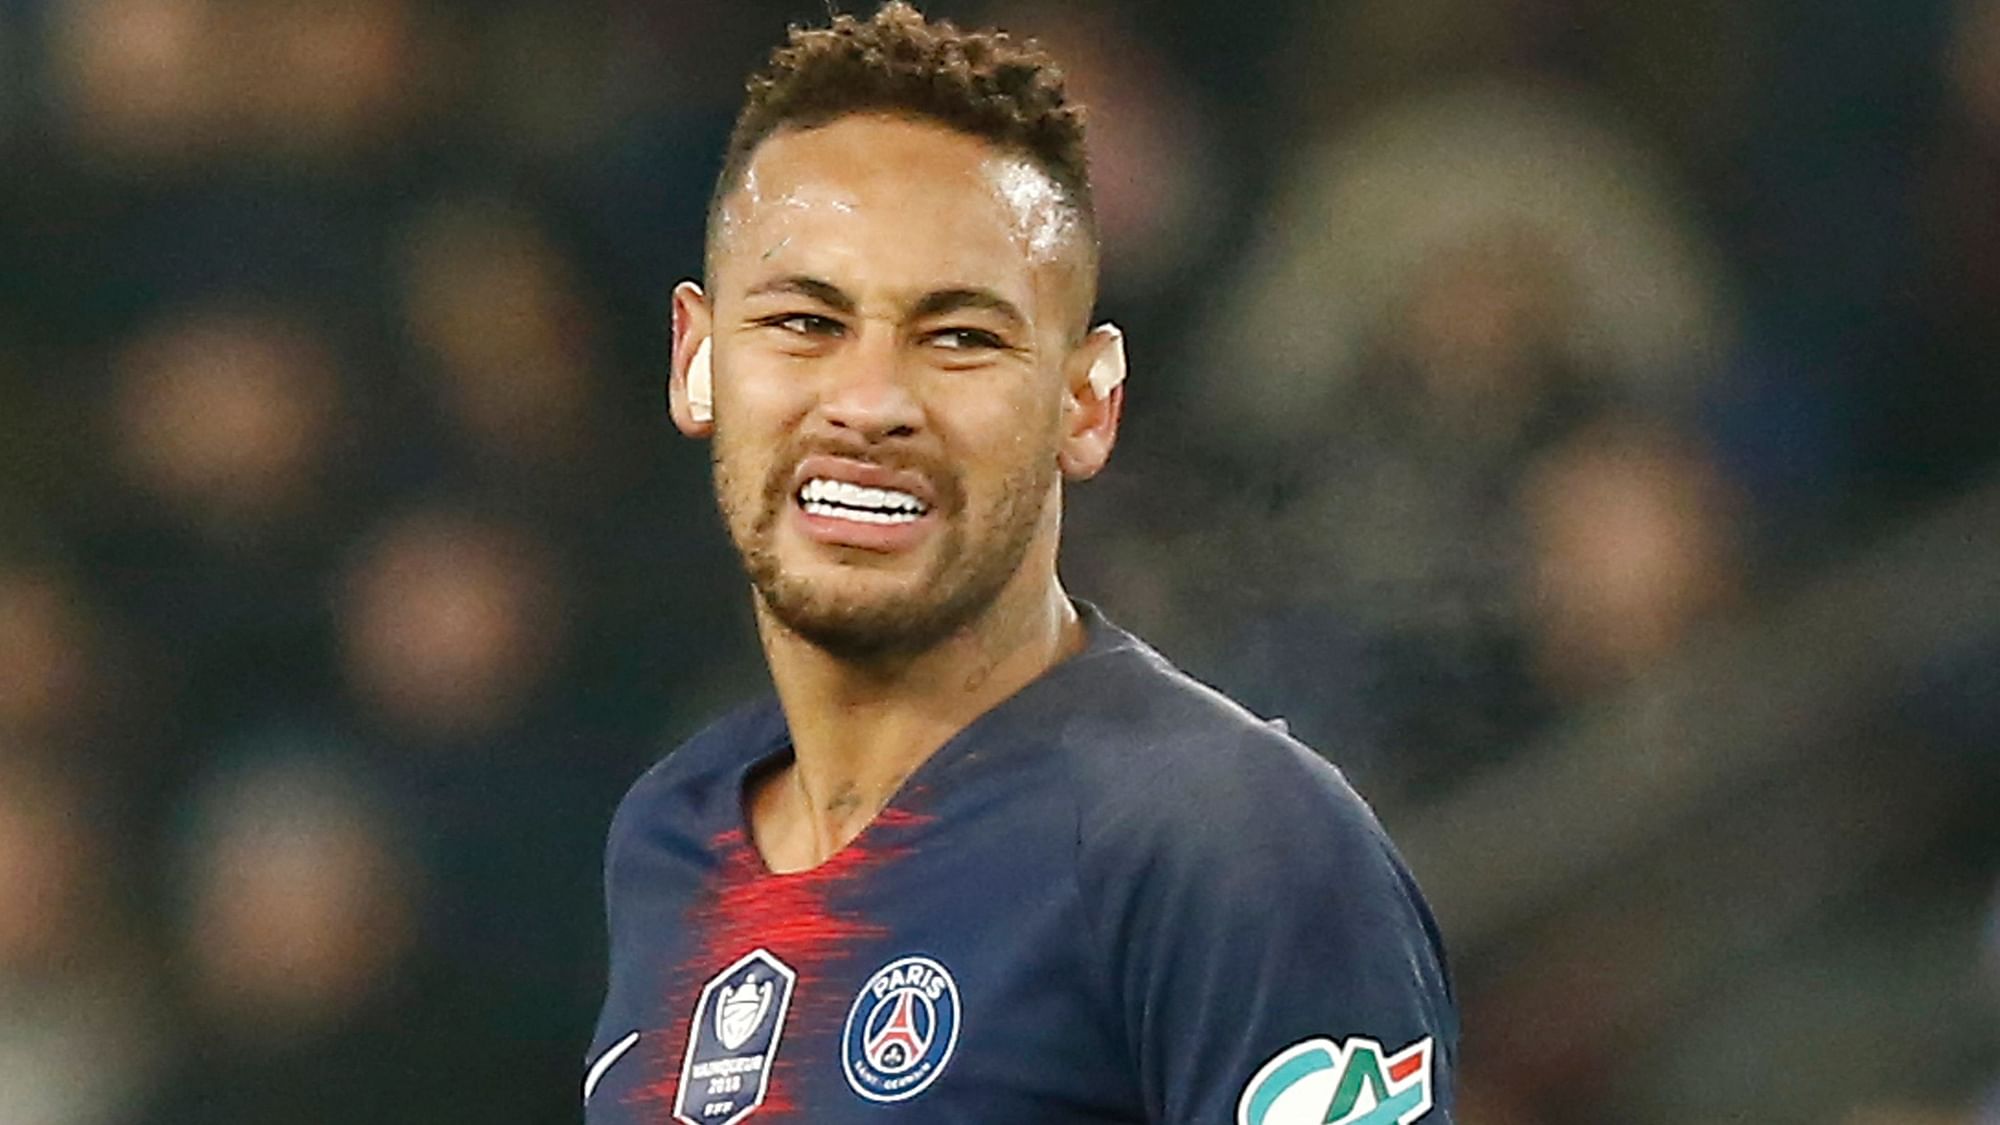 Paris Saint-Germain striker Neymar has lashed out against a video assistant referee decision.